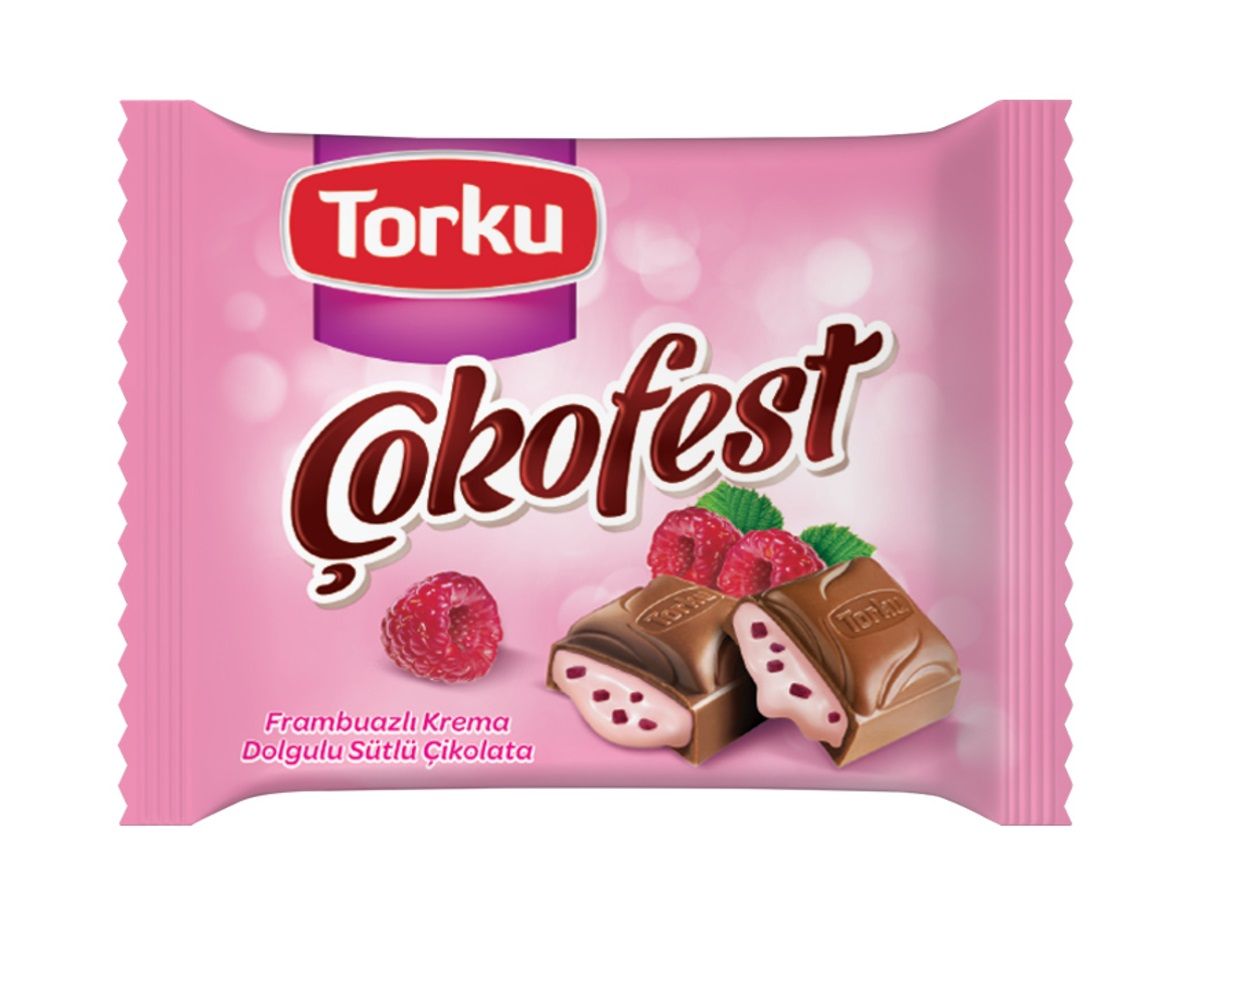 Torku Çokofest Frambuazlı Çikolatalı 60 Gr x 6 Adet